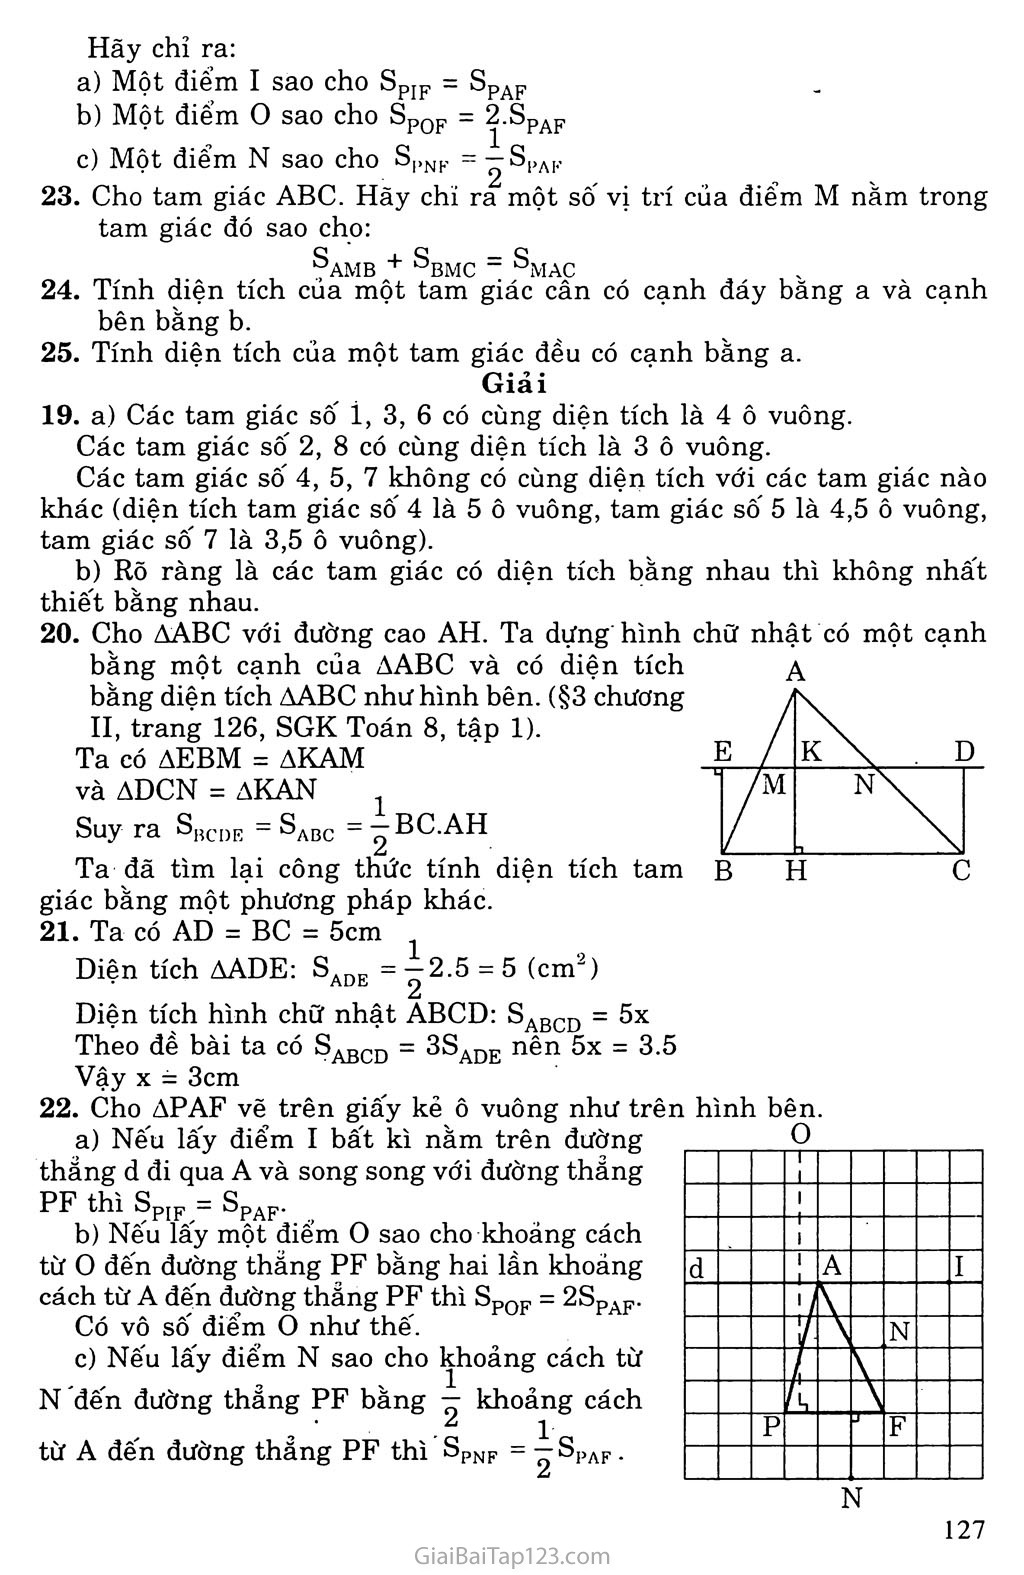 Bài 3. Diện tích tam giác trang 4